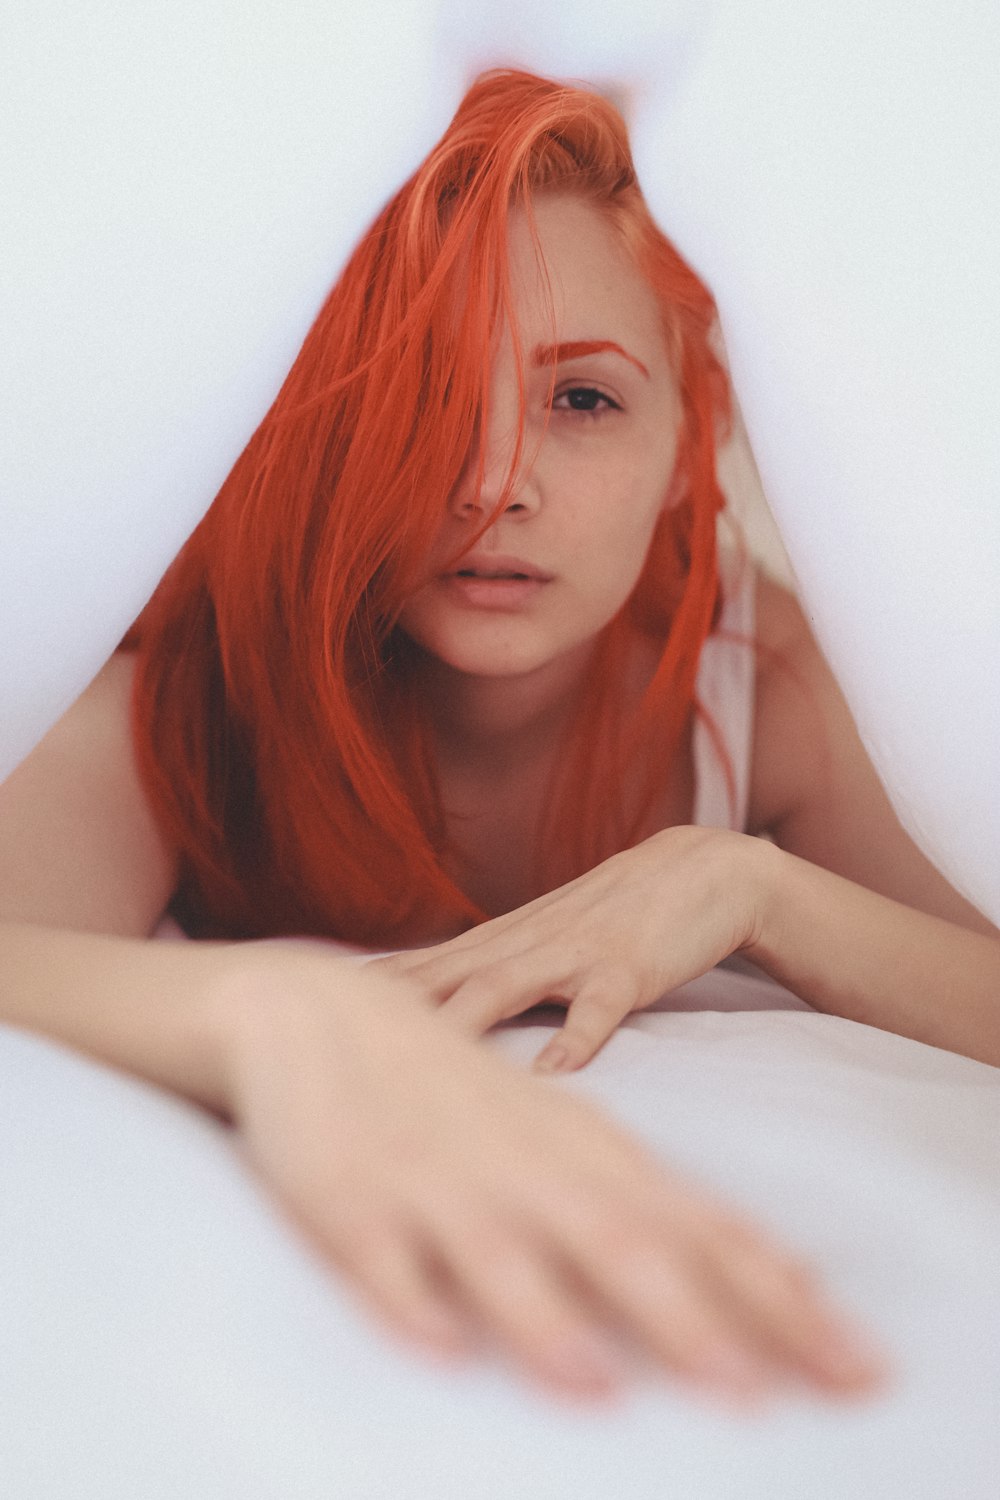 Eine Frau mit roten Haaren